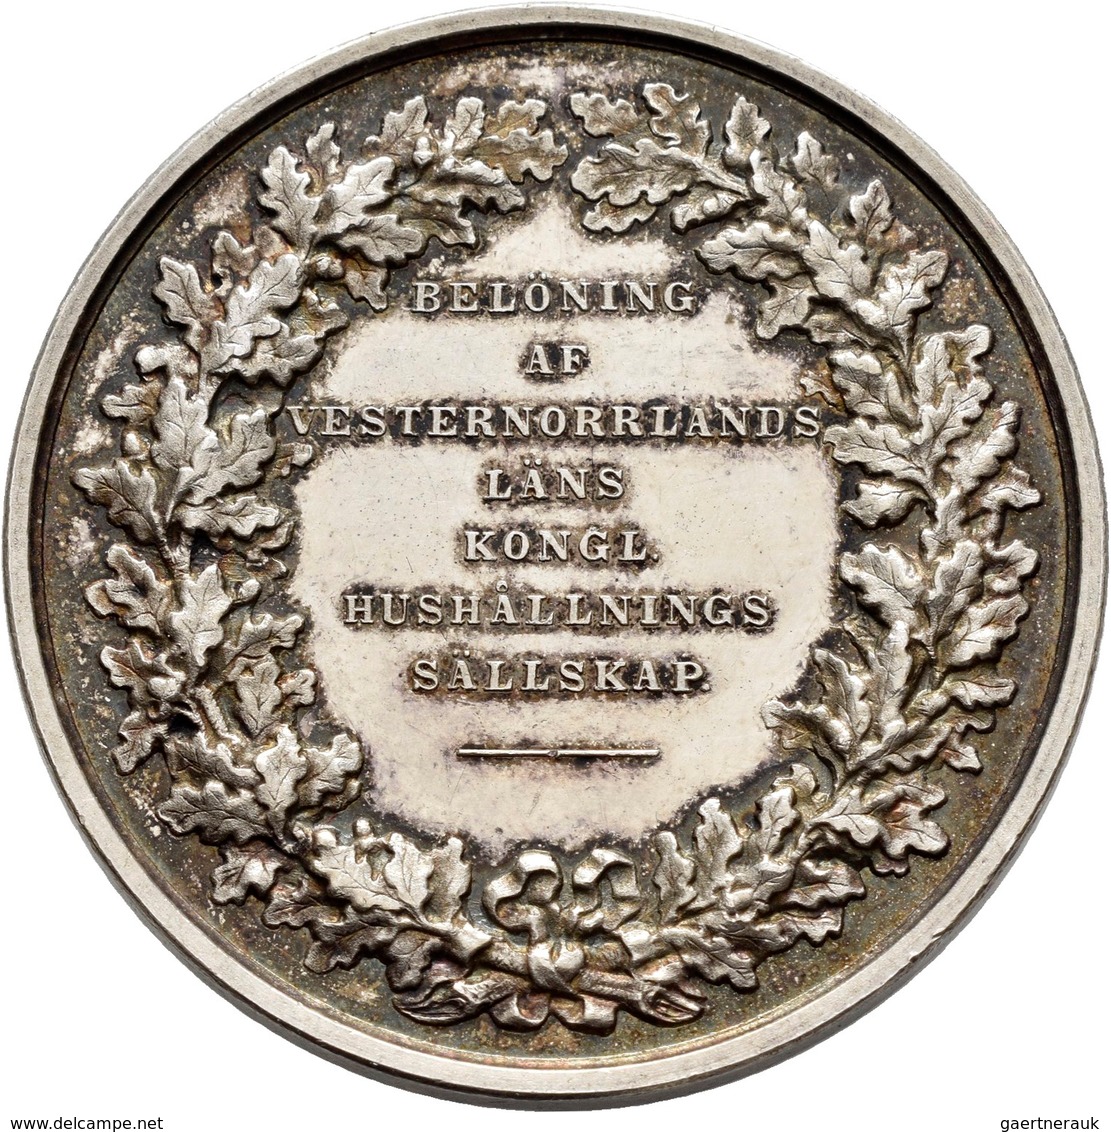 Schweden: Lot 25 schwedischer Medaillen in Silber und Bronze, u. a. Bronzene Prämienmedaille 1845, v